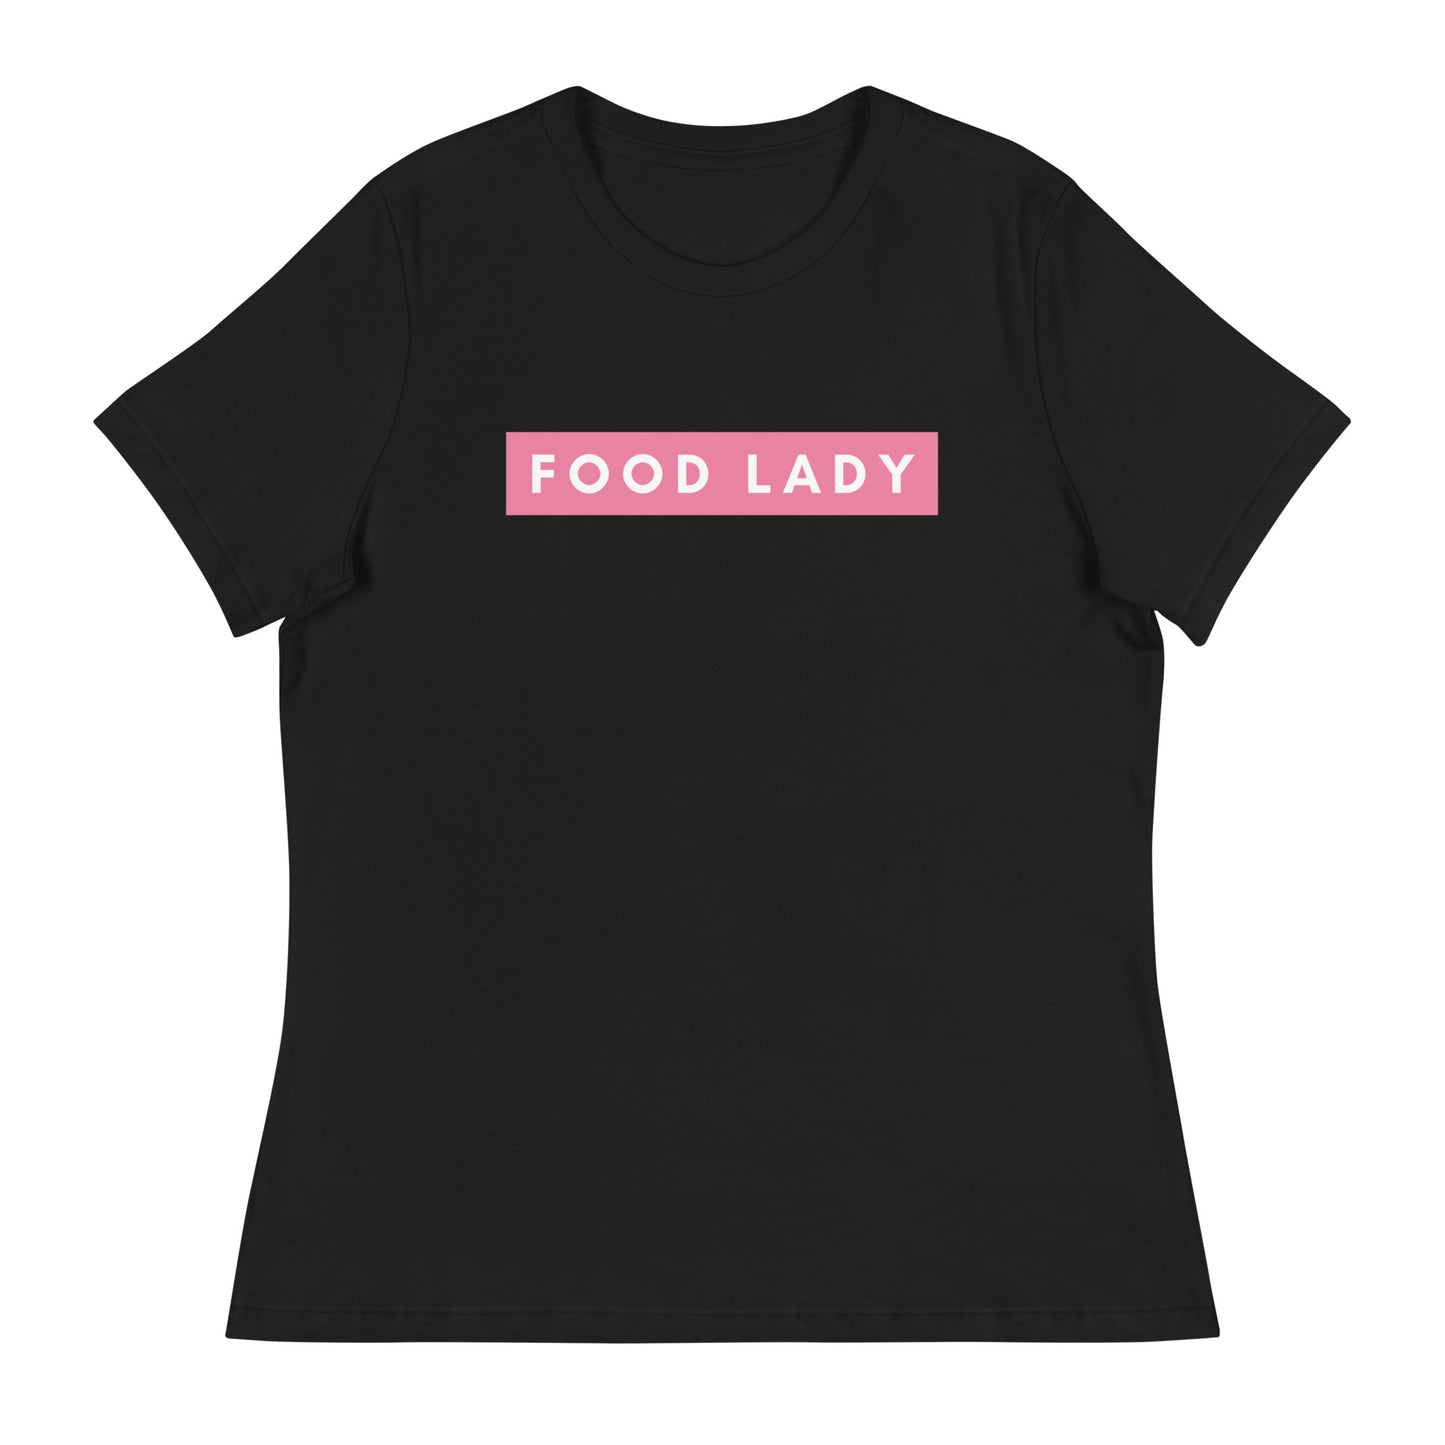 Food Lady Tee